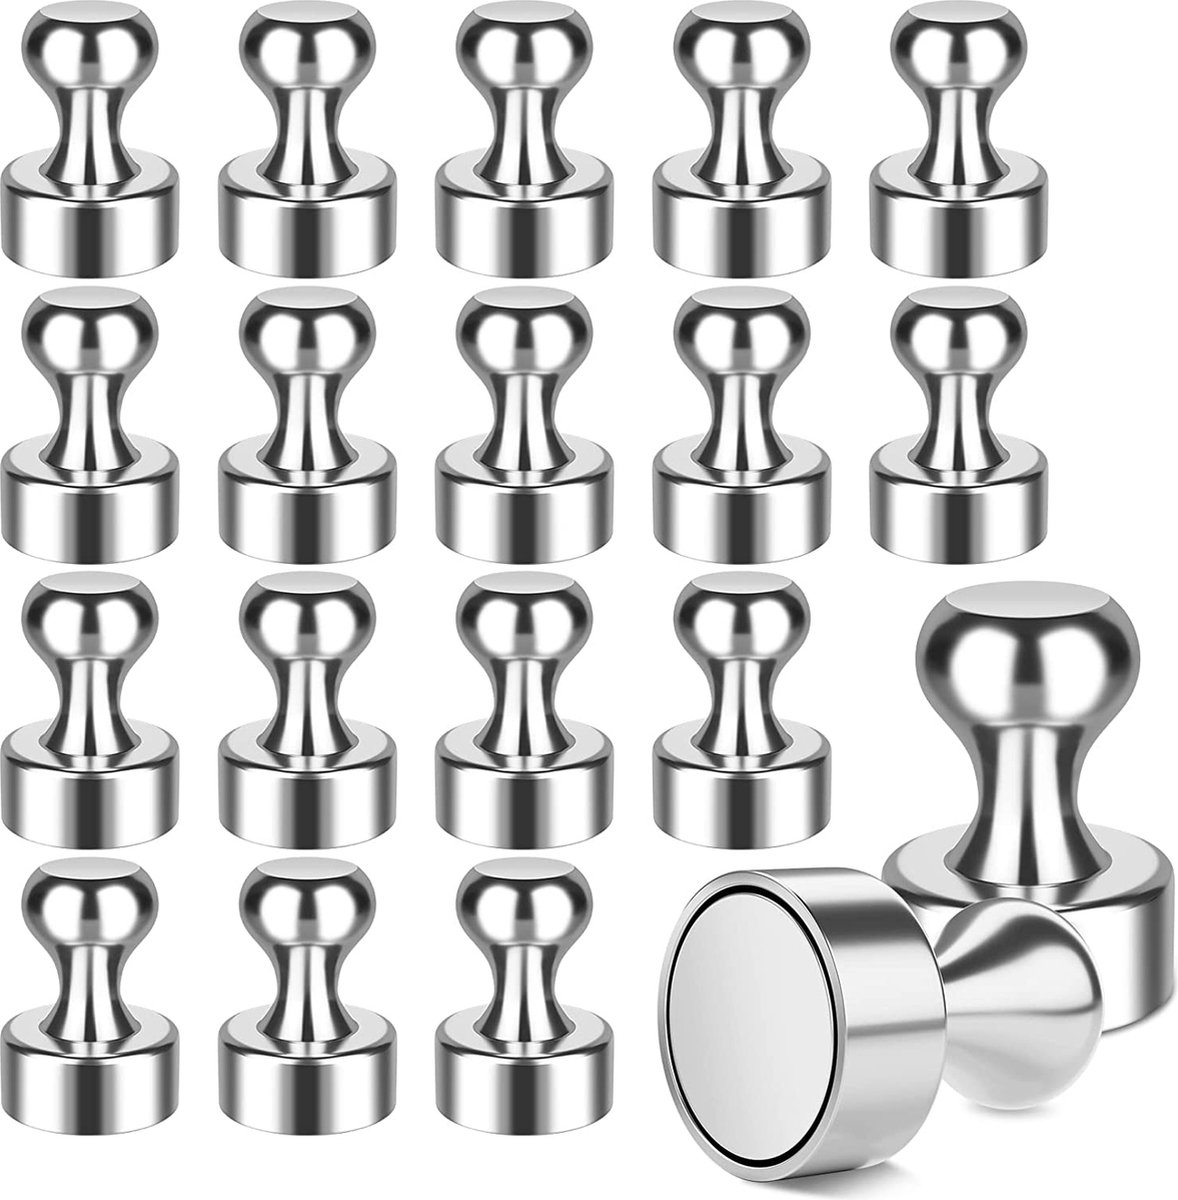 BOTC Super sterke magneten - 12 stuks-Inclusief Opbergdoosje met bewaardoosje  - zilver - BOTC